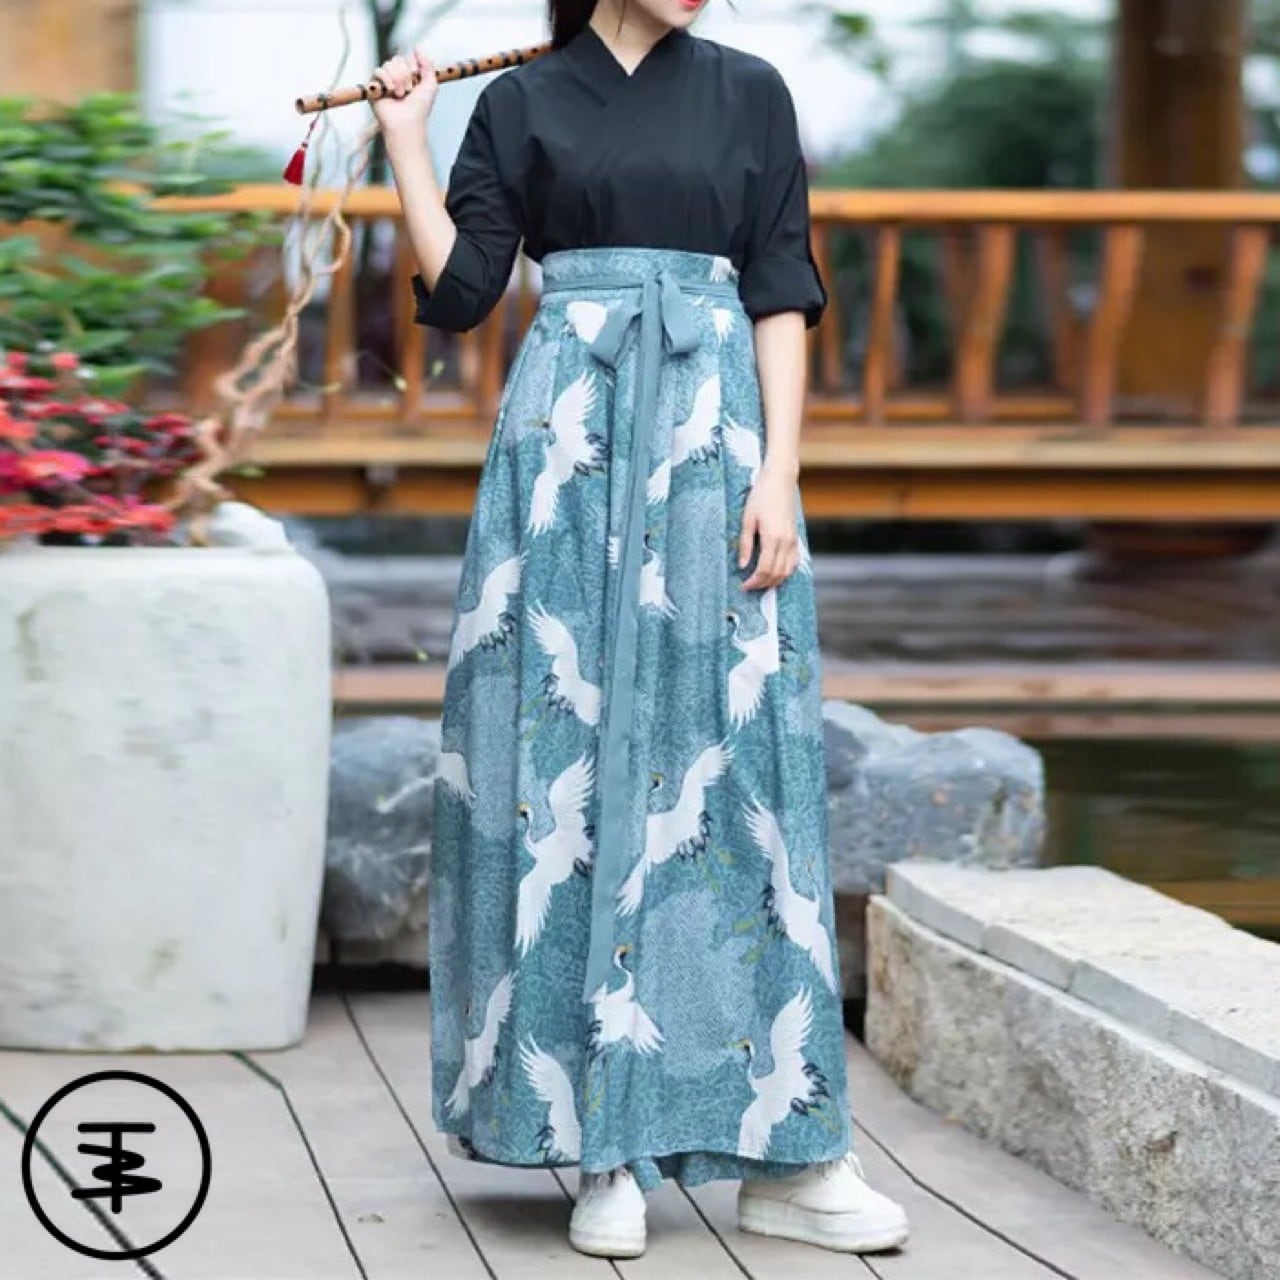 【 モダン和服 】modern japanese style kimono inspired dress setup ...